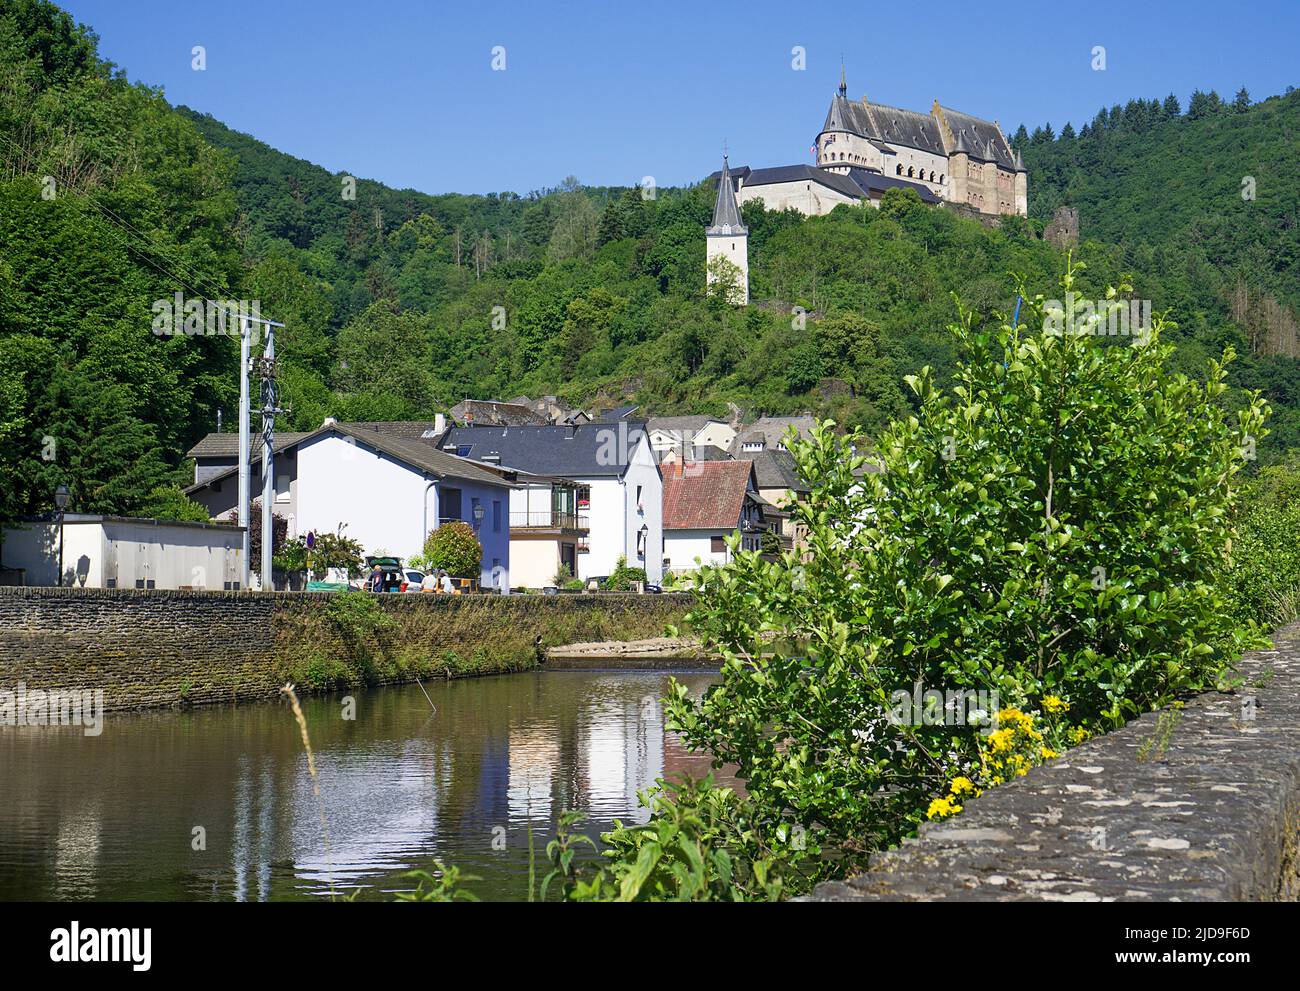 Vue depuis le fleuve décoré de fleurs jusqu'au château, village de Vianden, canton de Vianden, Grand-Duché de Luxembourg, Europe Banque D'Images